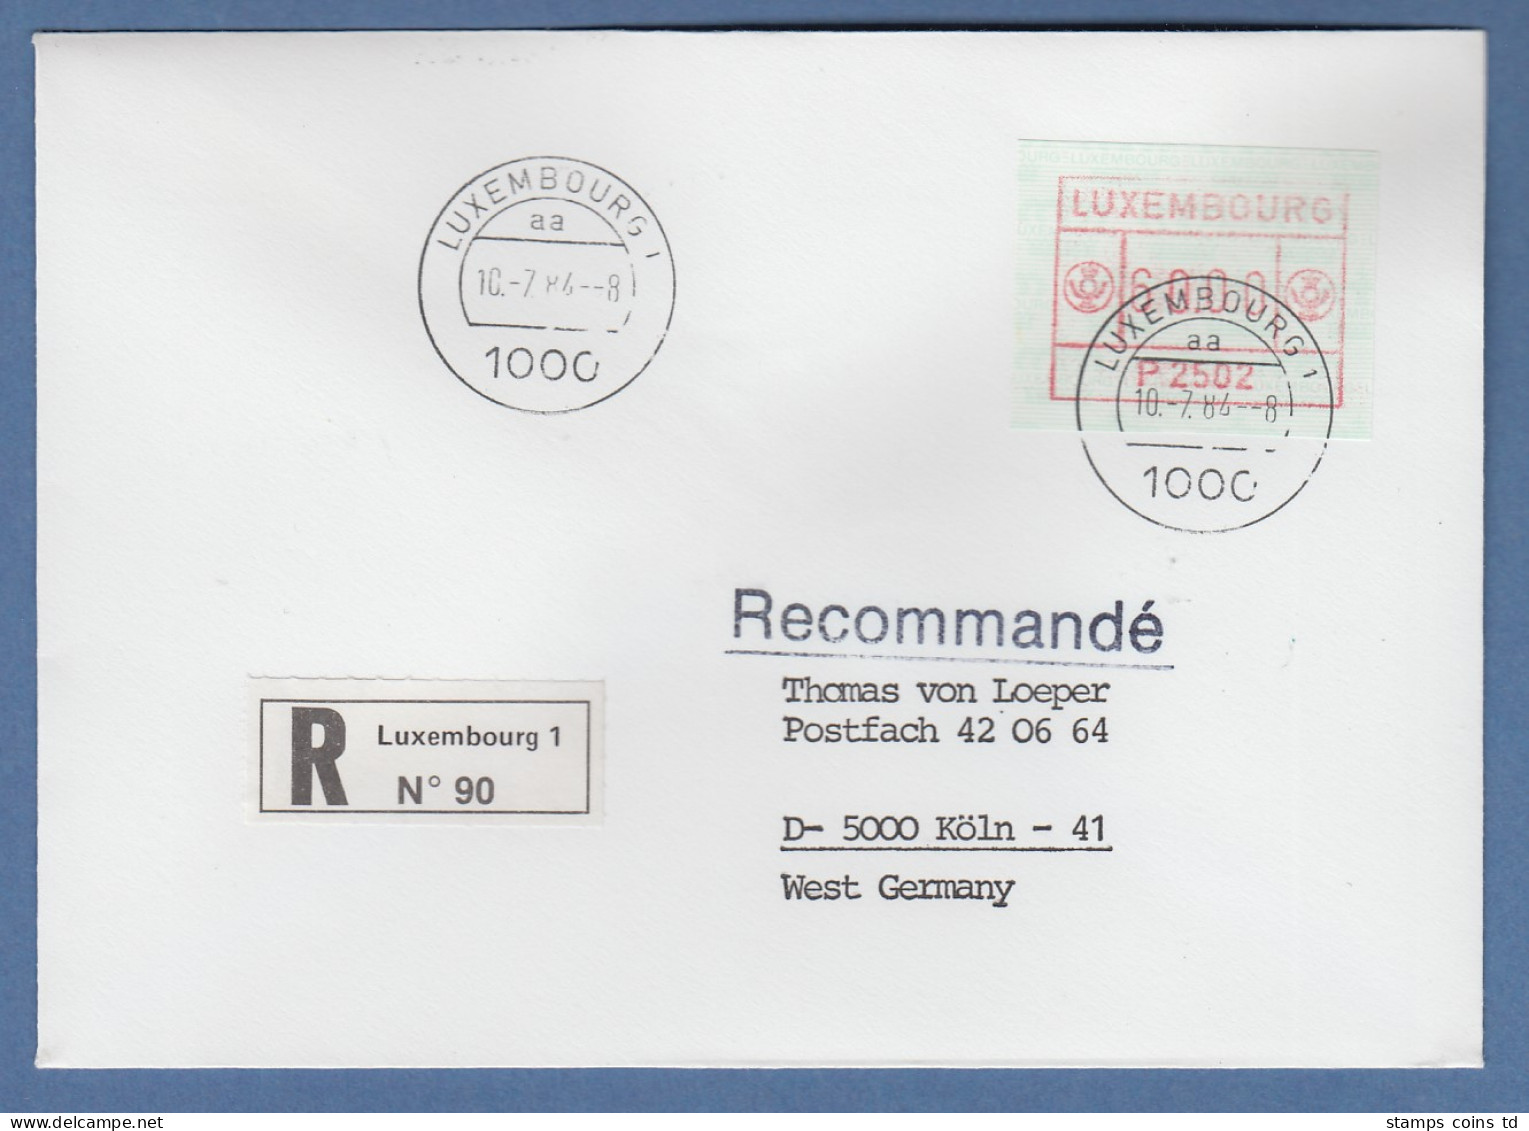 Luxemburg ATM P2502 Wert 60 Auf R-FDC Nach Köln, 10.7.84 - Frankeervignetten